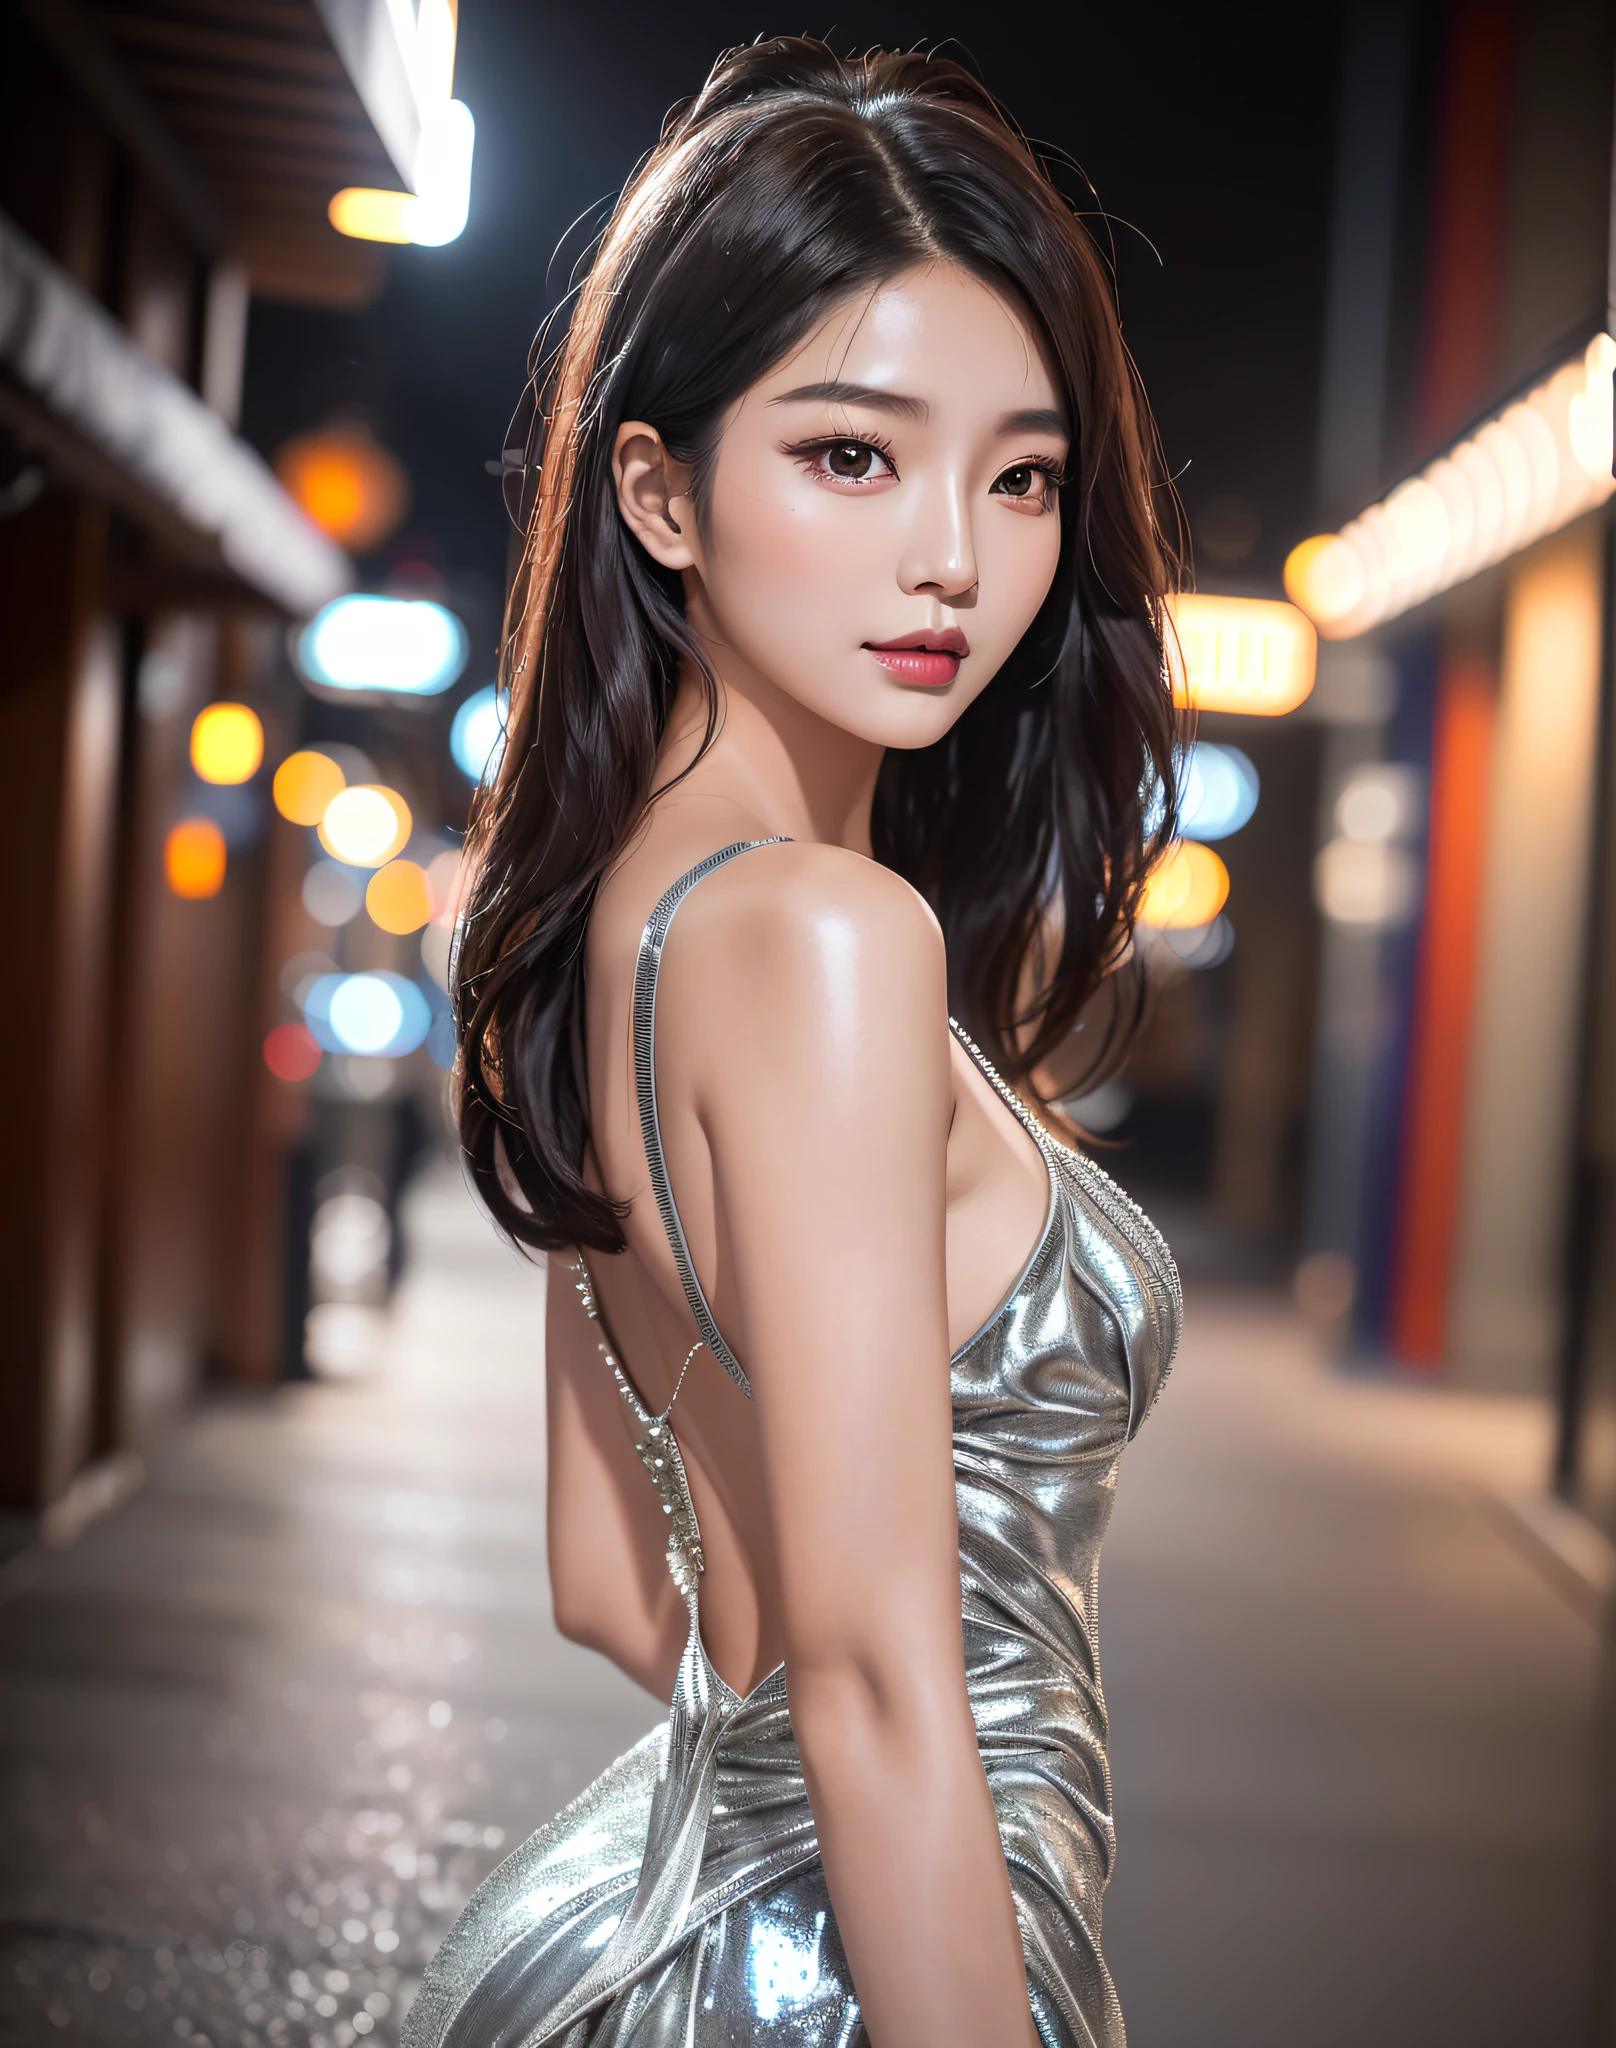 Araffe asiatische Frau in einem silbernen Kleid posiert für ein Foto, gorgeous young koreanische Frau, beautiful young koreanische Frau, beautiful south koreanische Frau, koreanisches Mädchen, Jaeyeon Nam, koreanisches Damenmode-Modell, Schönes asiatisches Mädchen, heonhwa choe, koreanische Frau, wunderschönes chinesisches Modell, gut ausgeleuchtetes Foto, hwang se - on